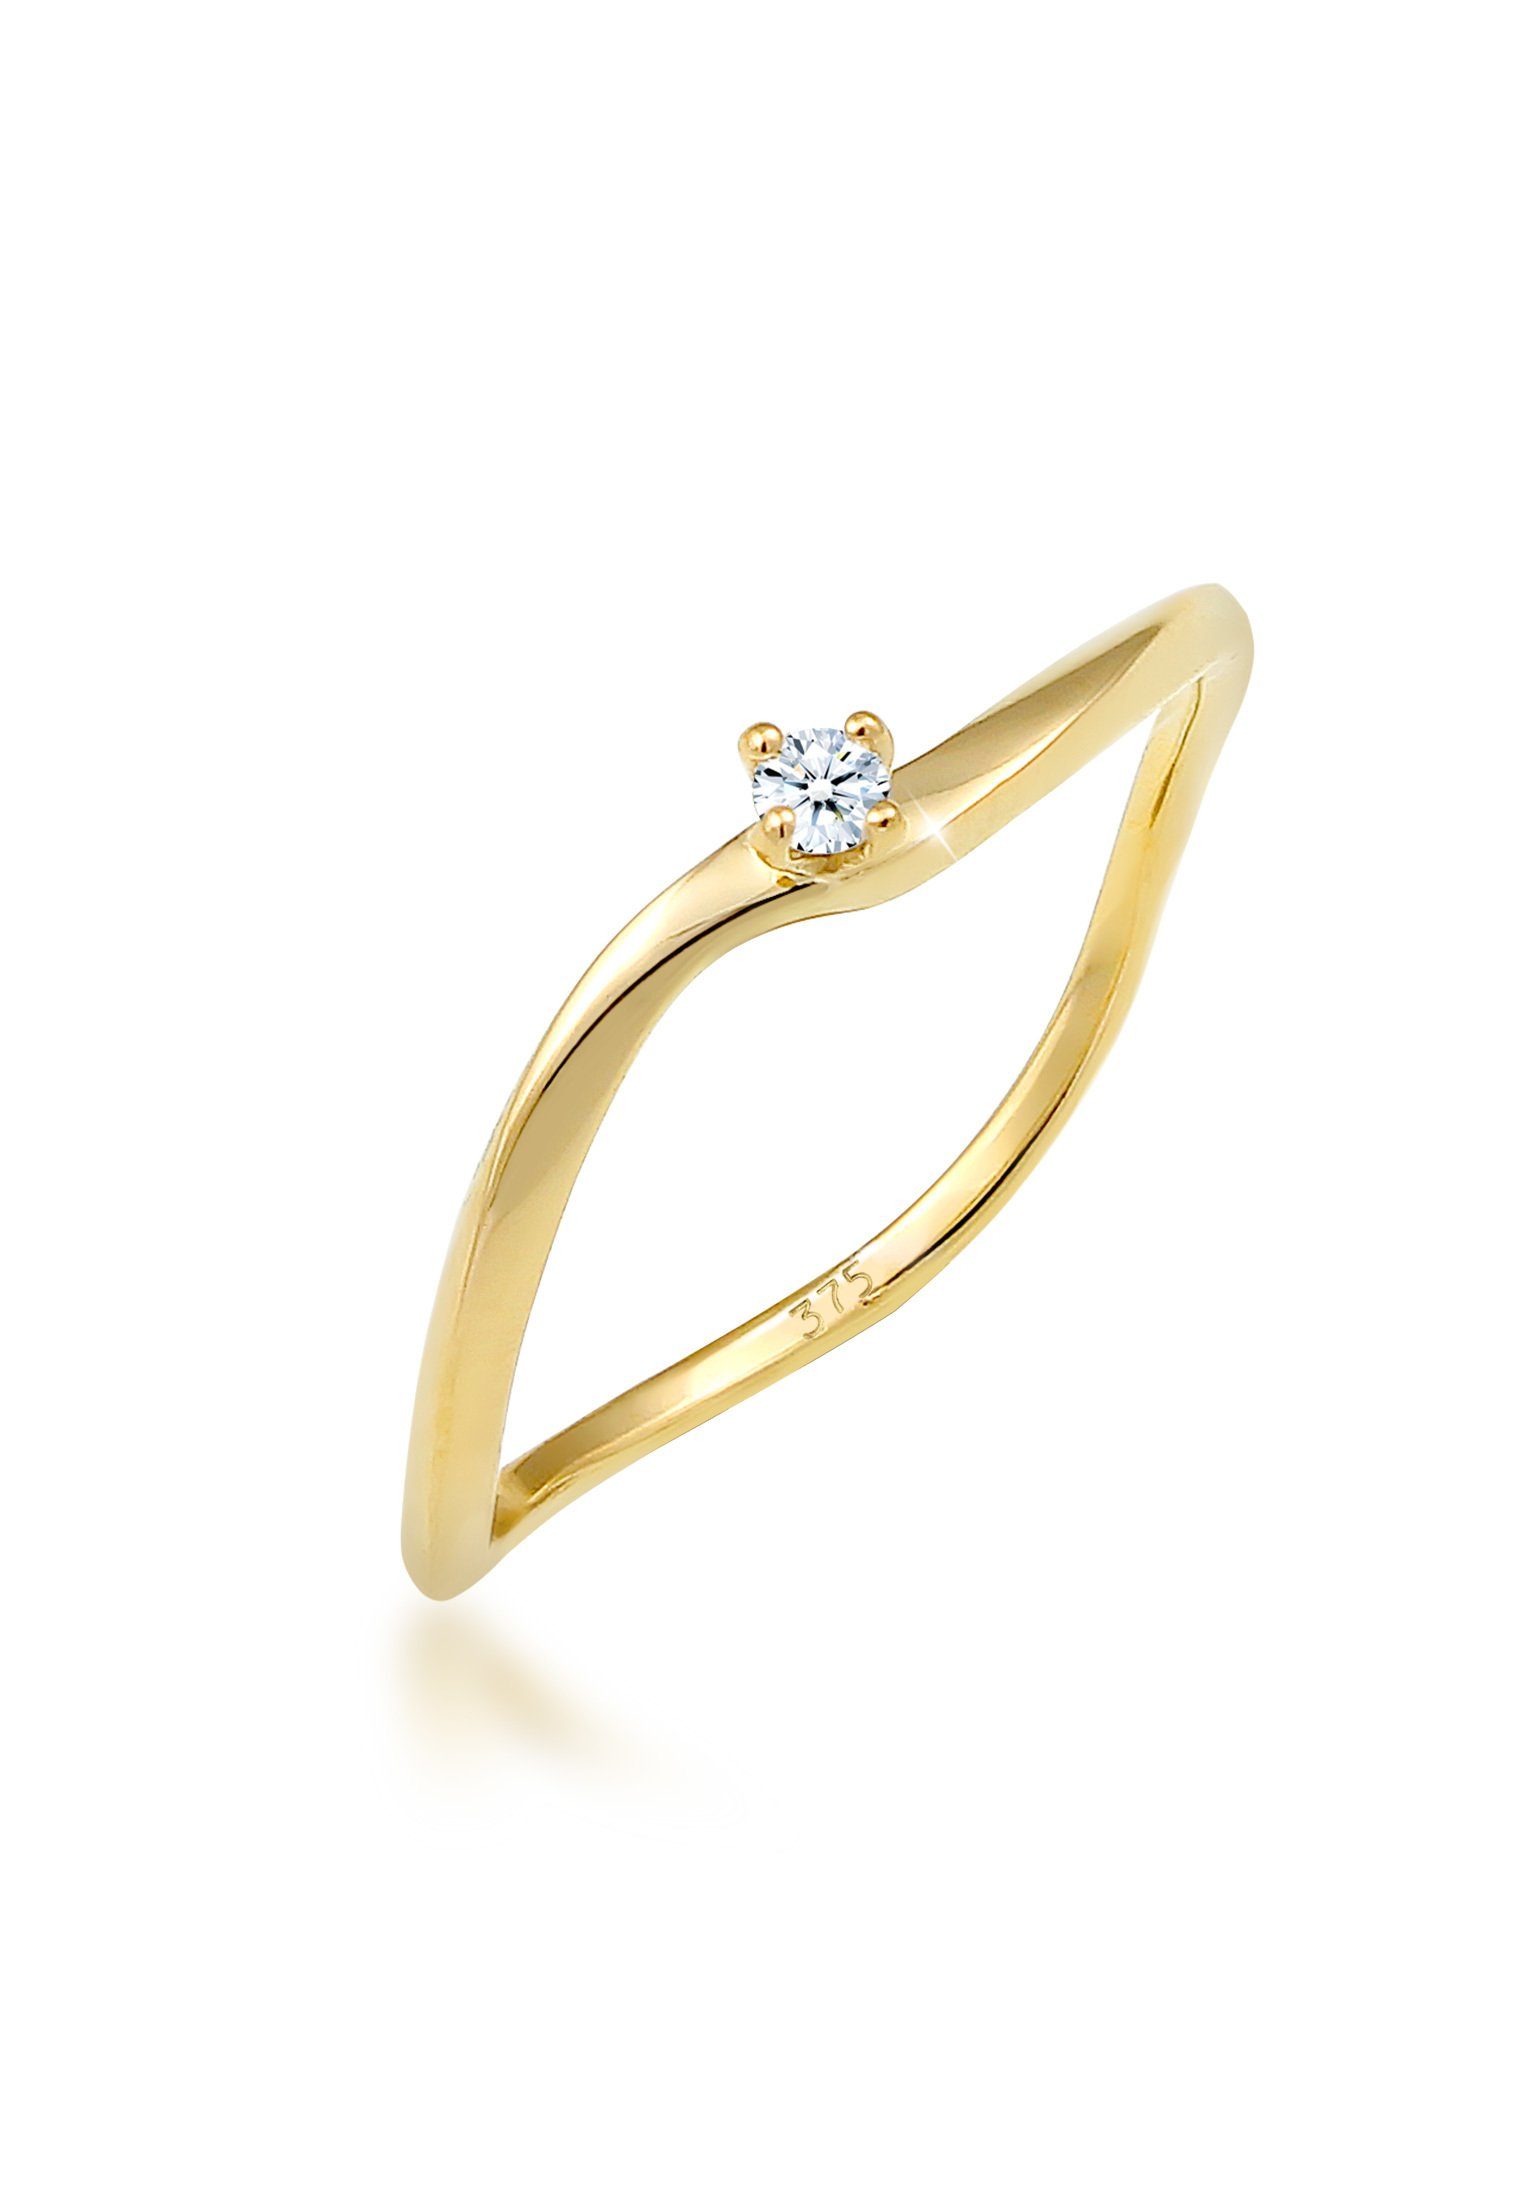 Elli DIAMONDS Verlobungsring Verlobung Welle Diamant (0.03 ct) 375 Gelbgold